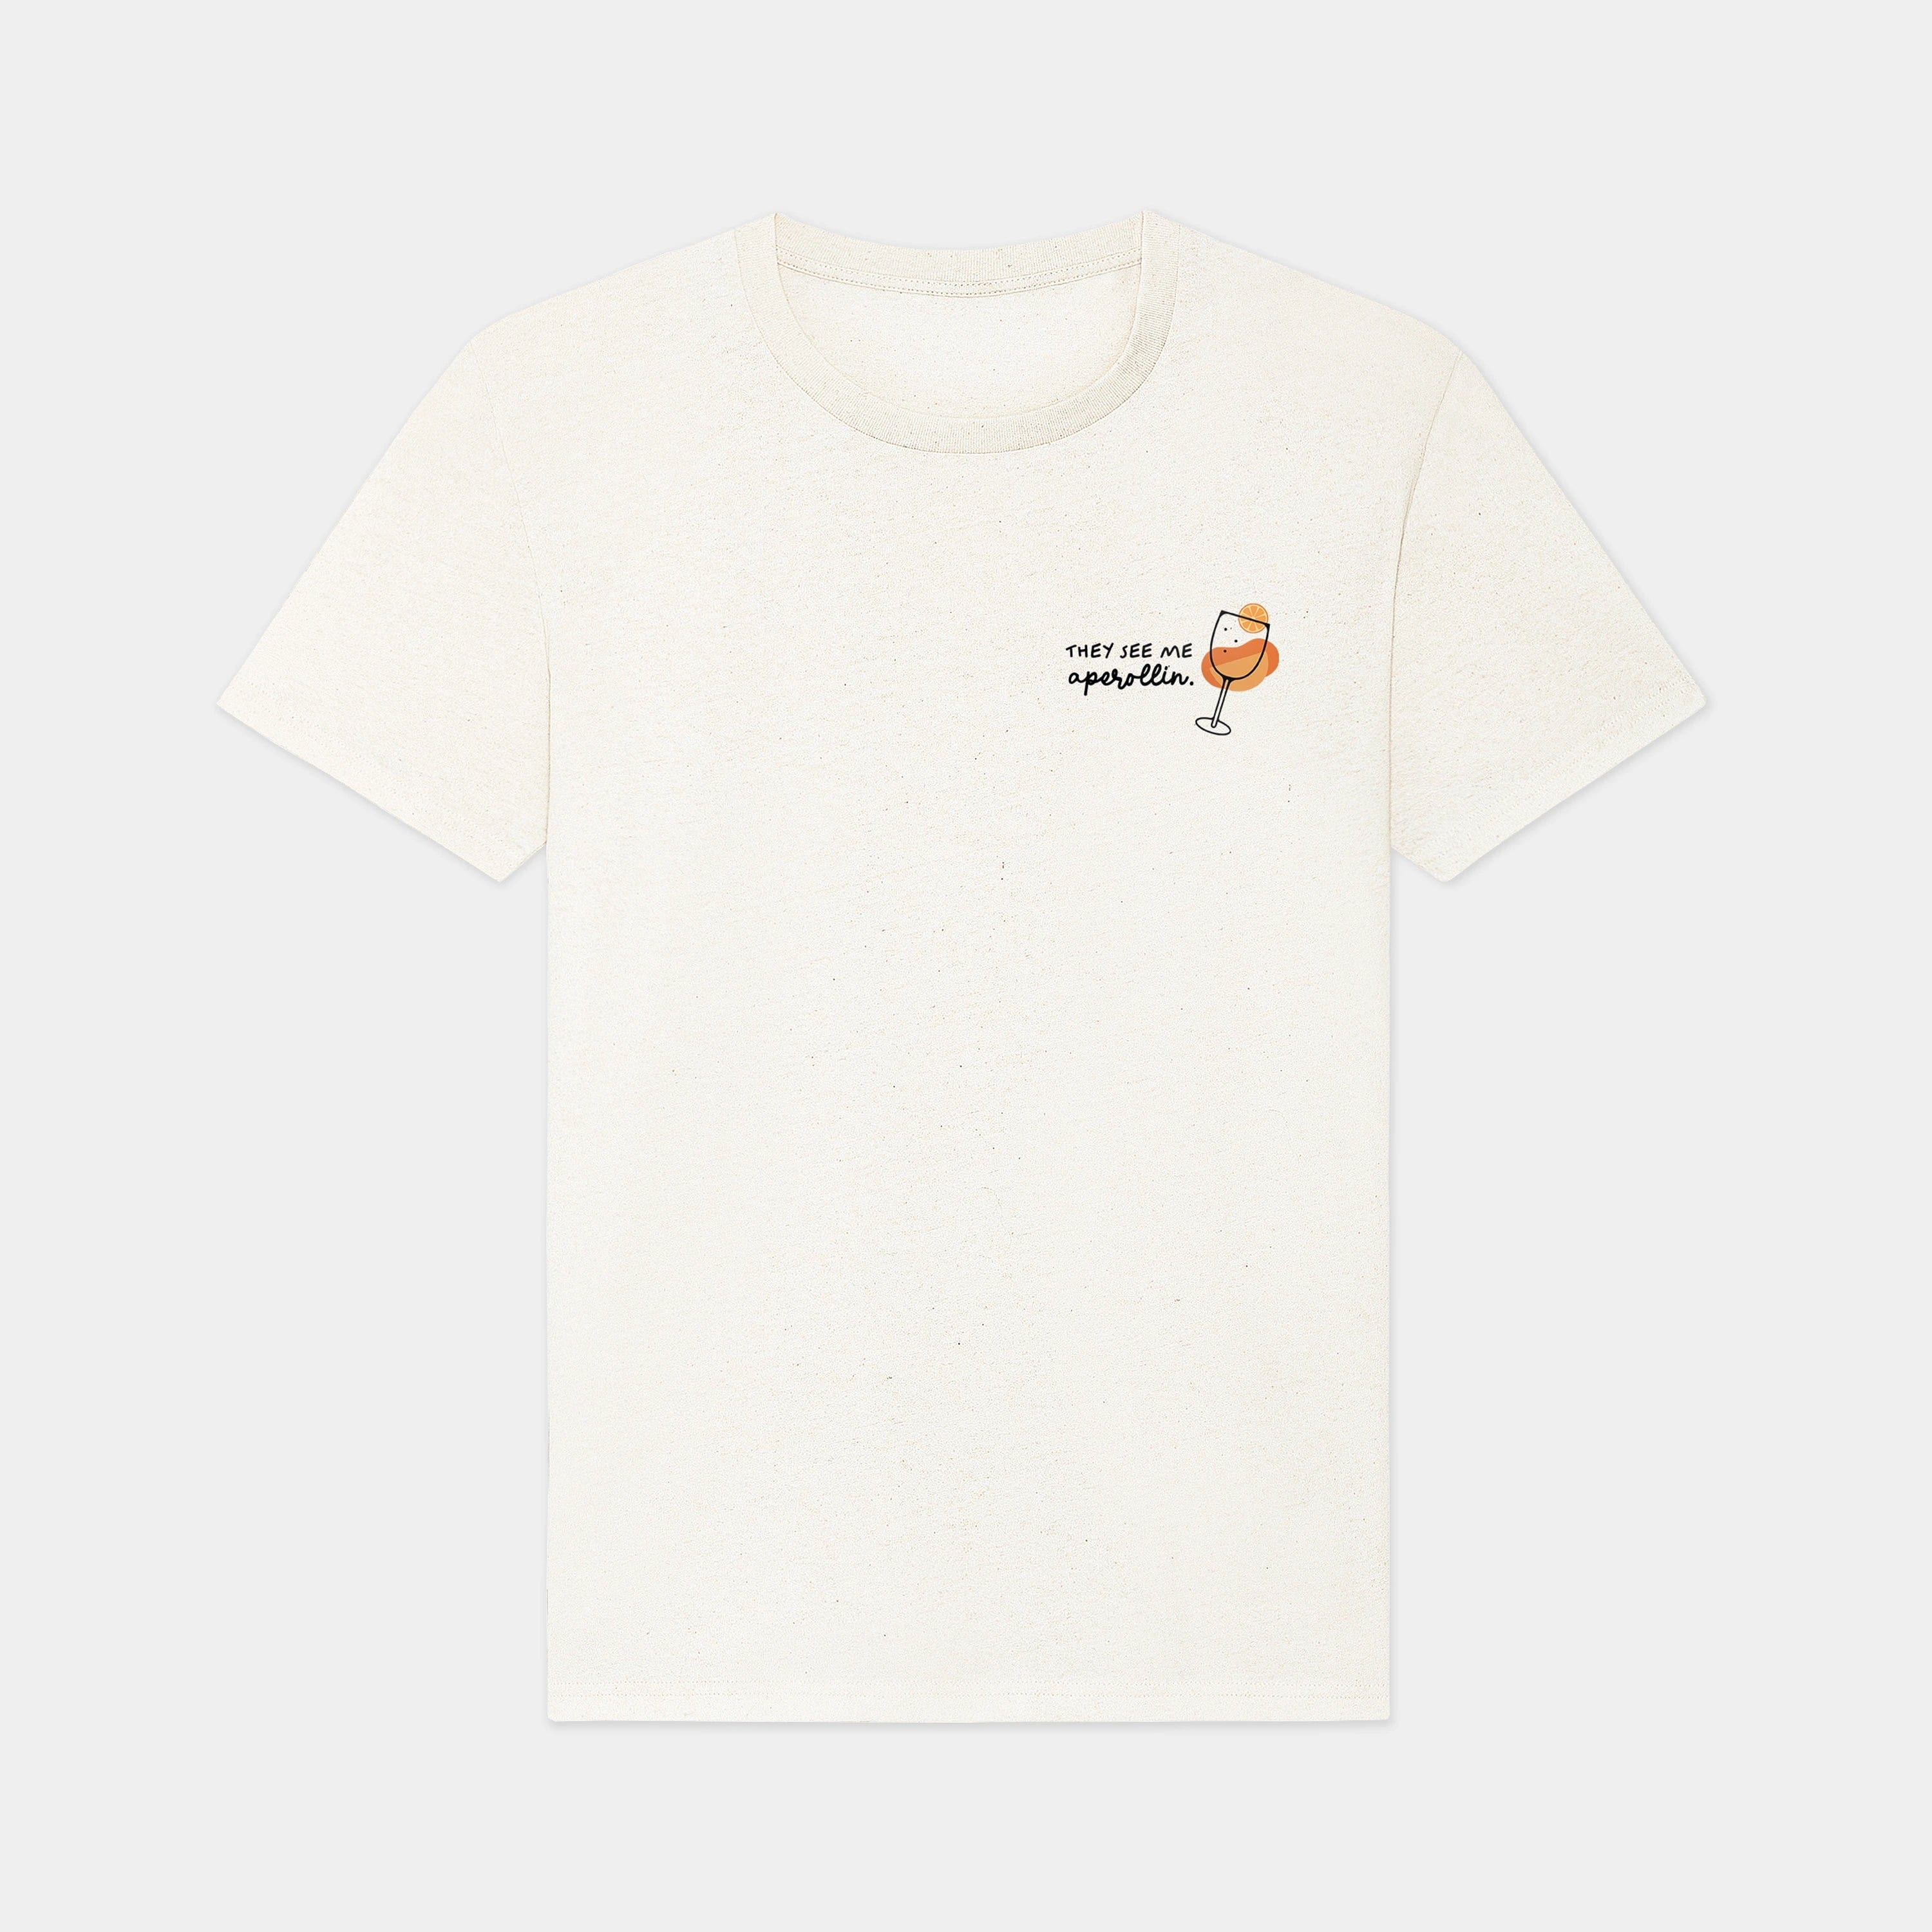 HEITER & LÄSSIG T-Shirt "Aperollin" - aus nachhaltiger und fairer Produktion